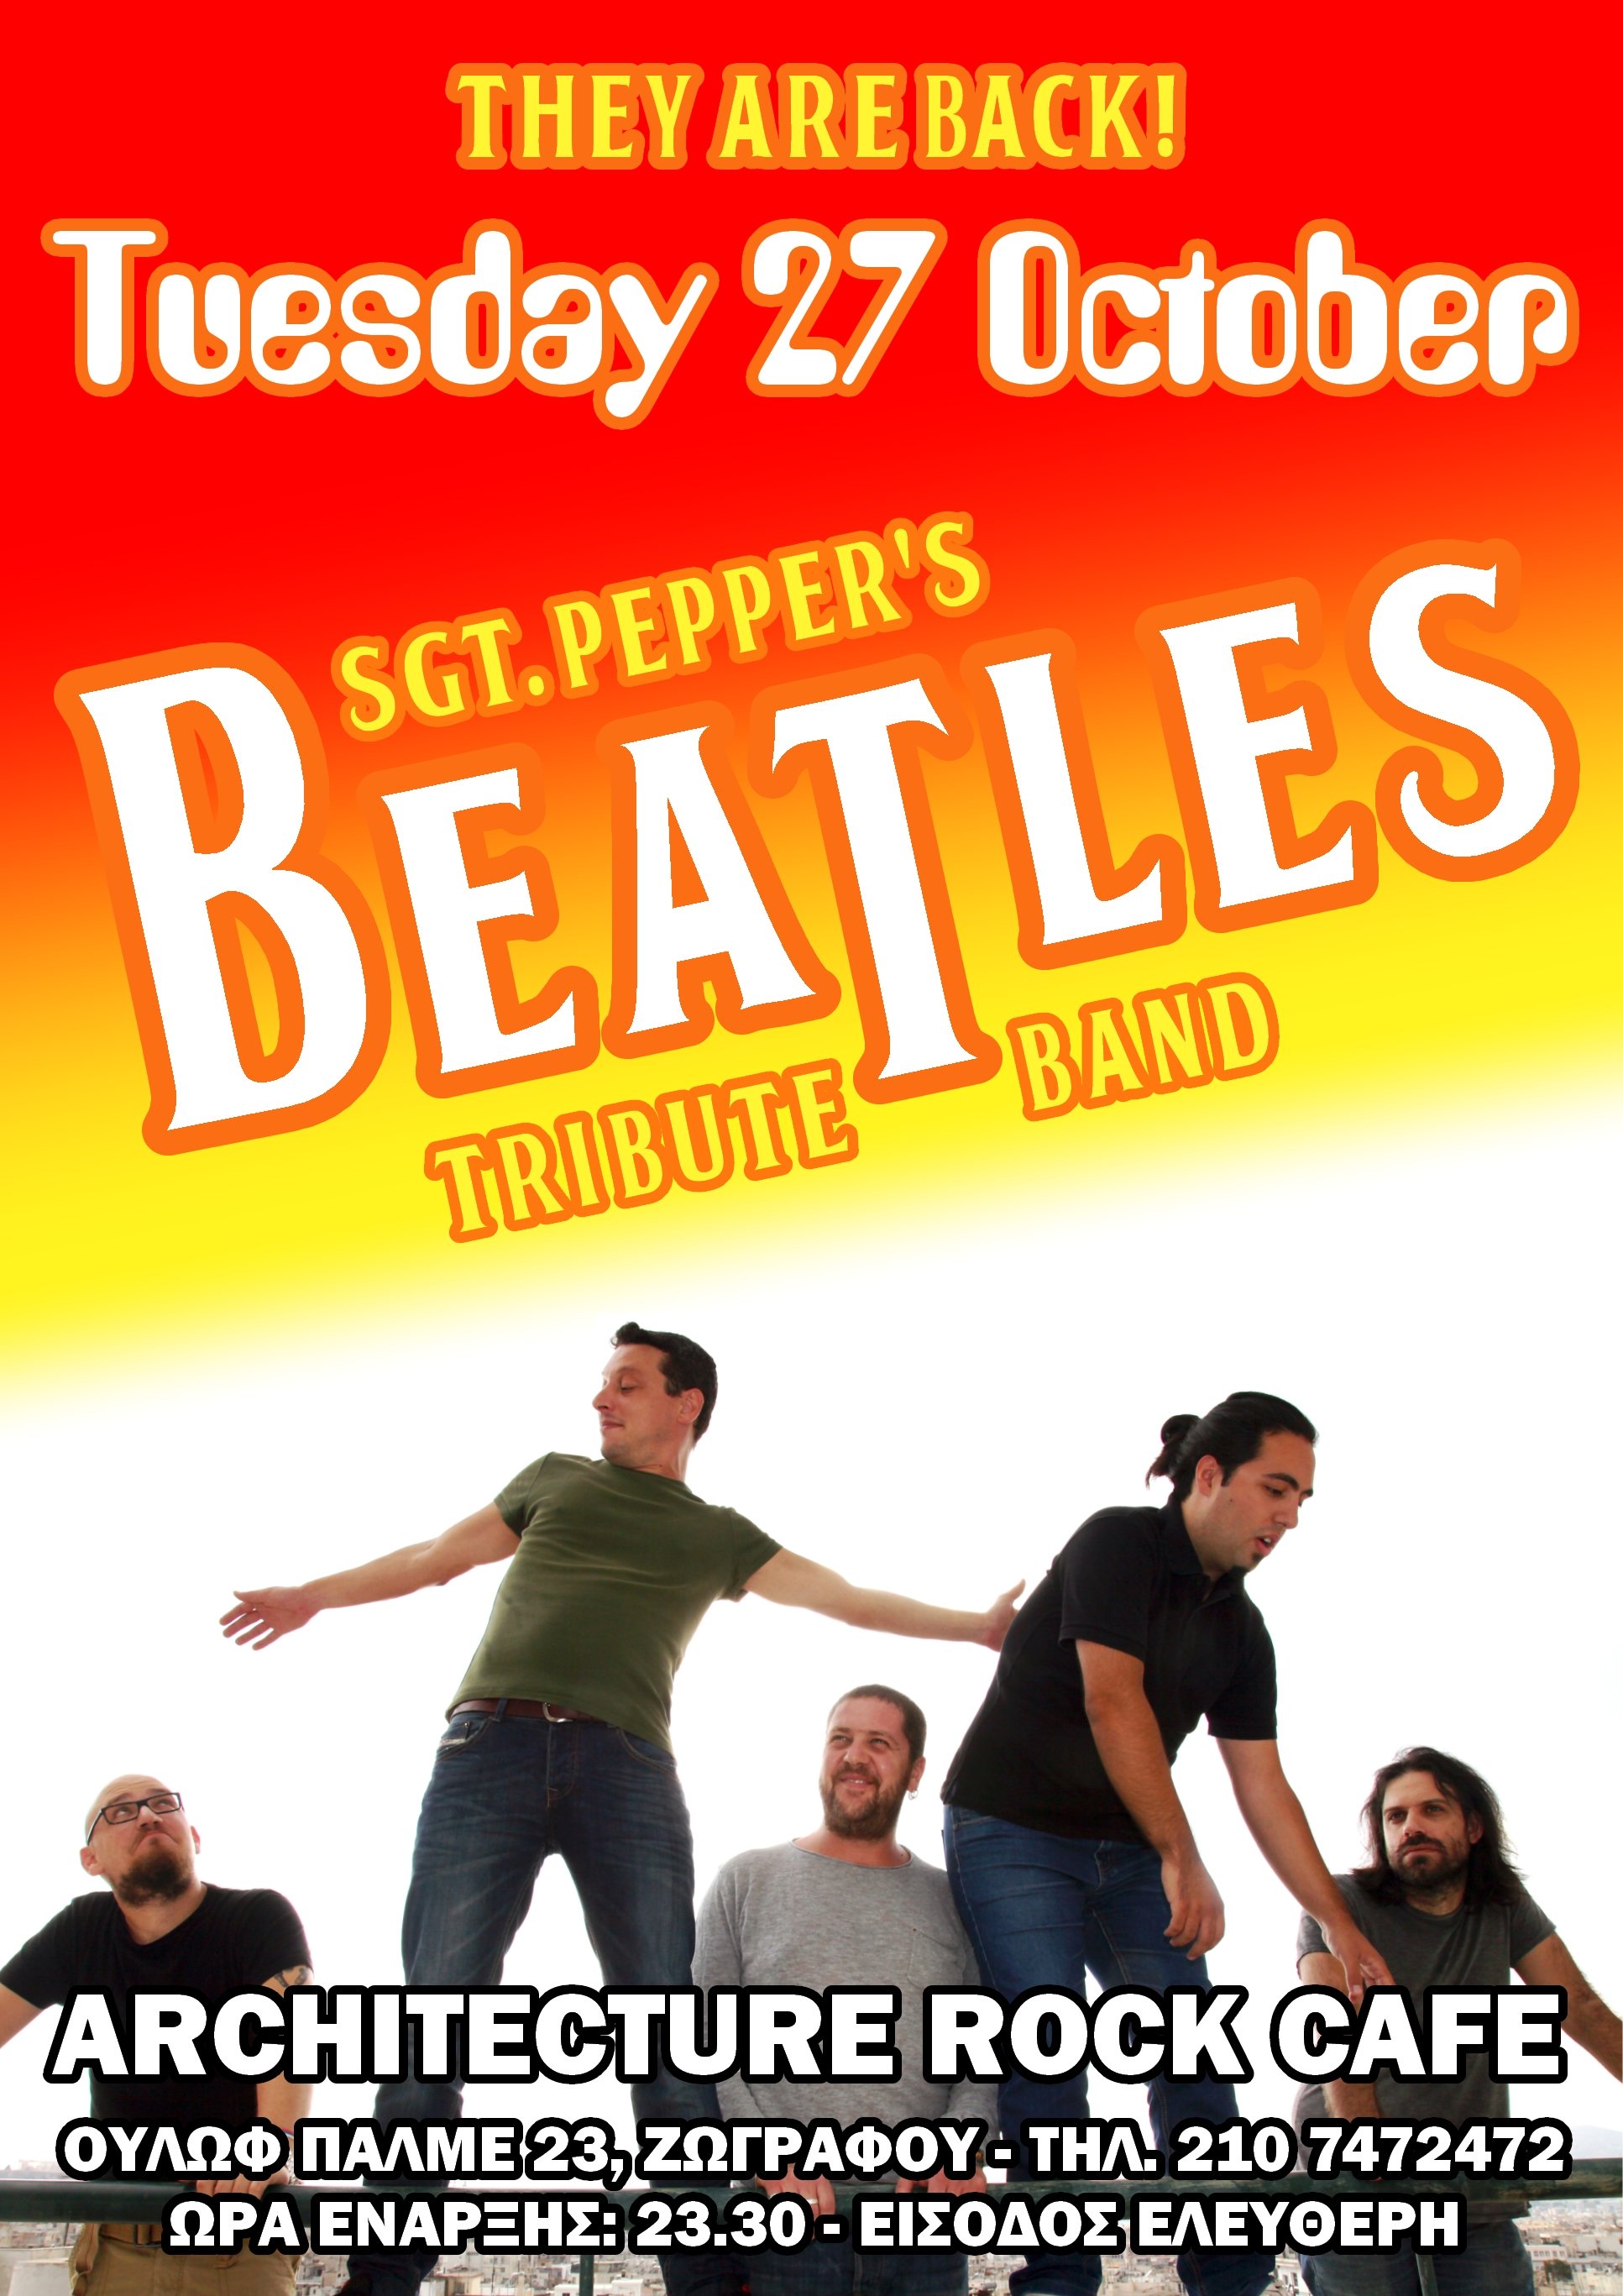 Οι Sgt. Pepper's Beatles Tribute Band στο Architecture Rock Café